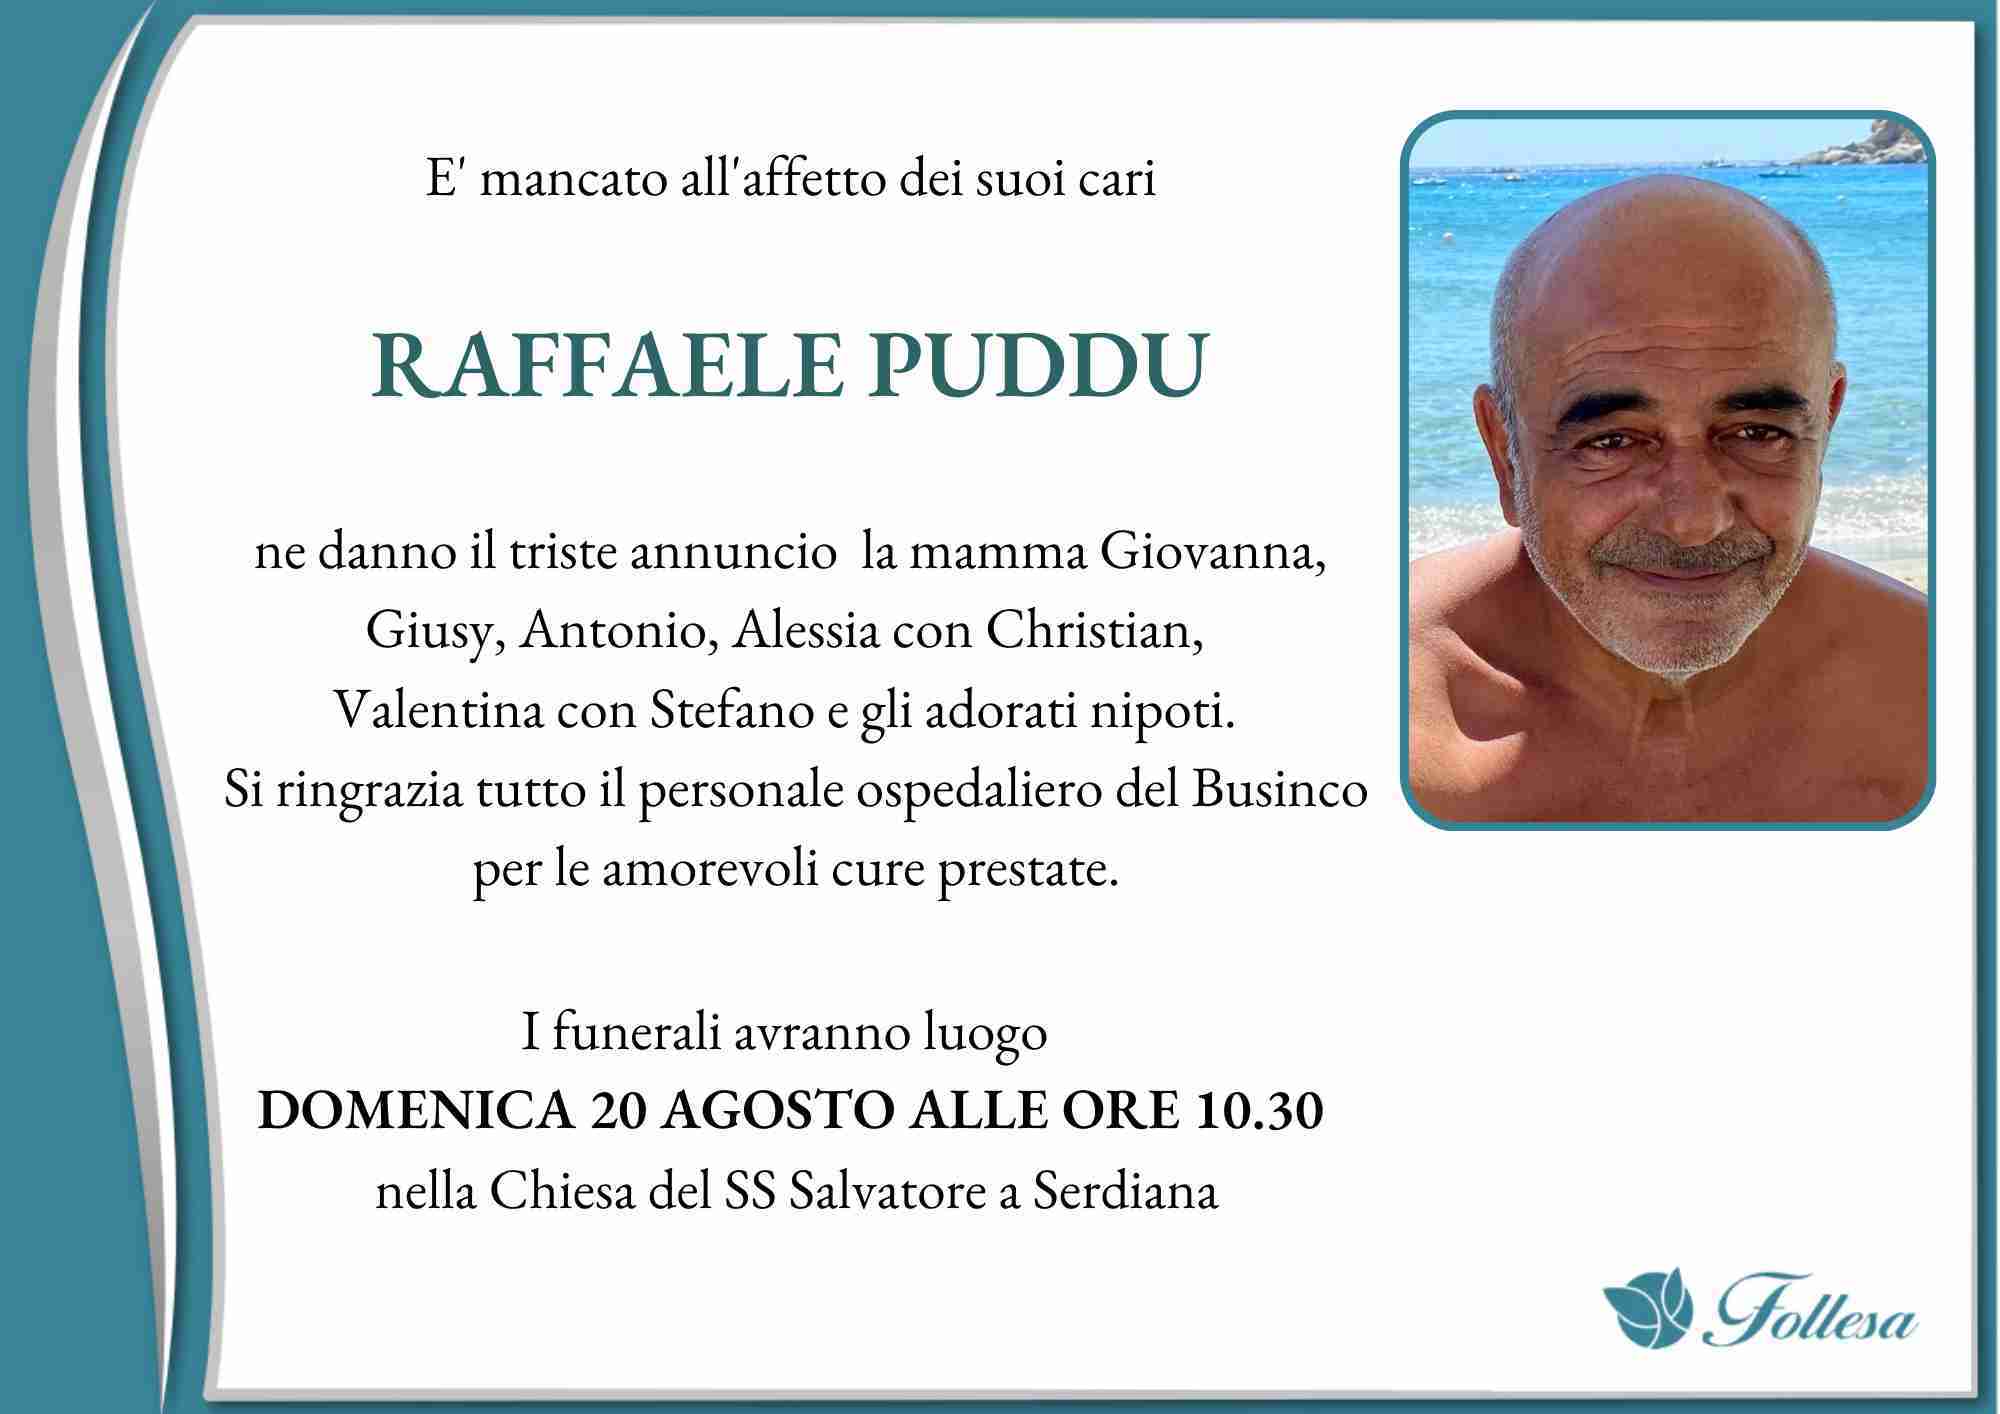 Raffaele Puddu